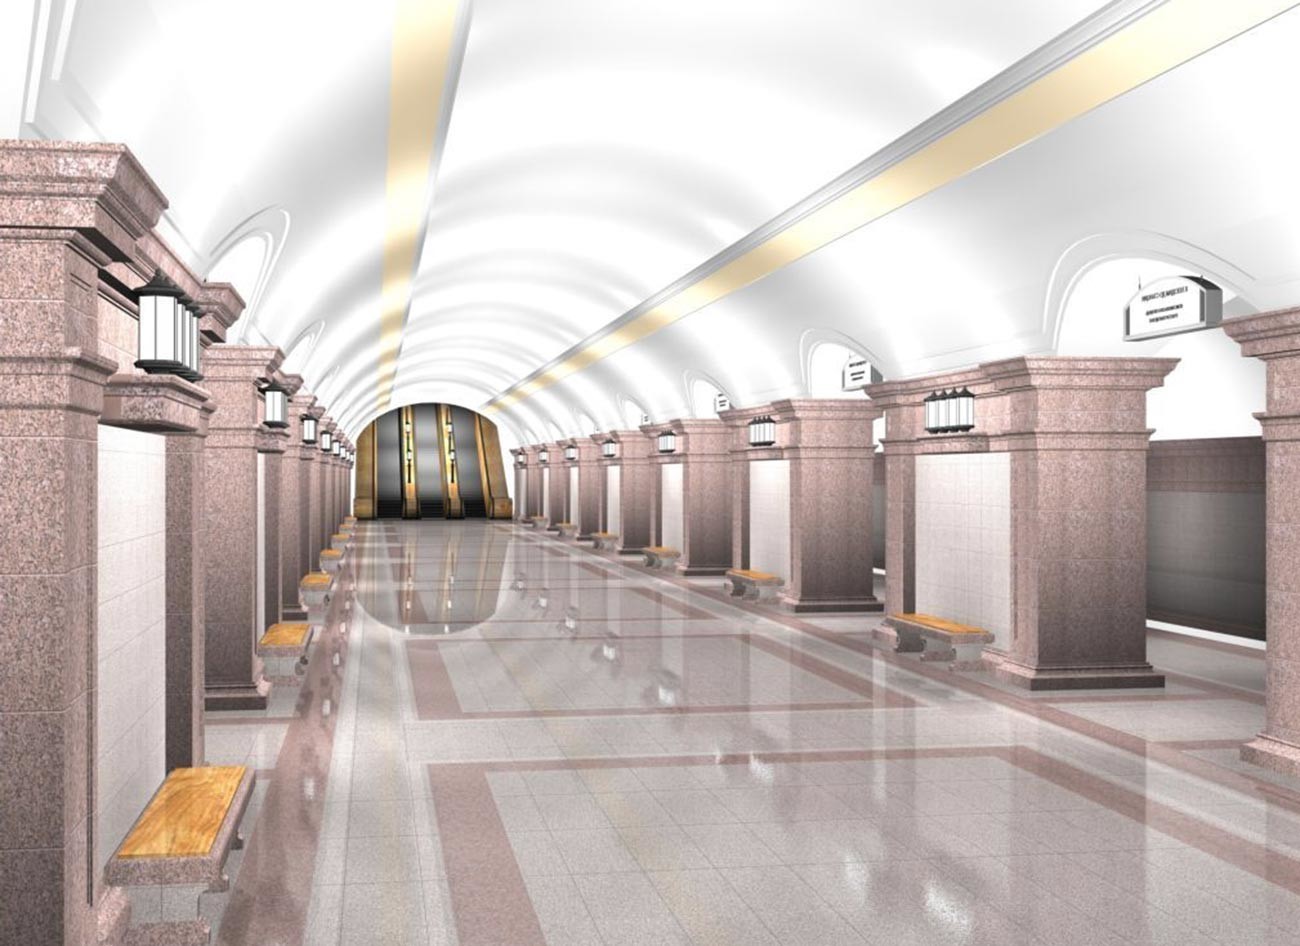 Tako bi lahko izgledala postaja podzemne železnice v Čeljabinsku.
